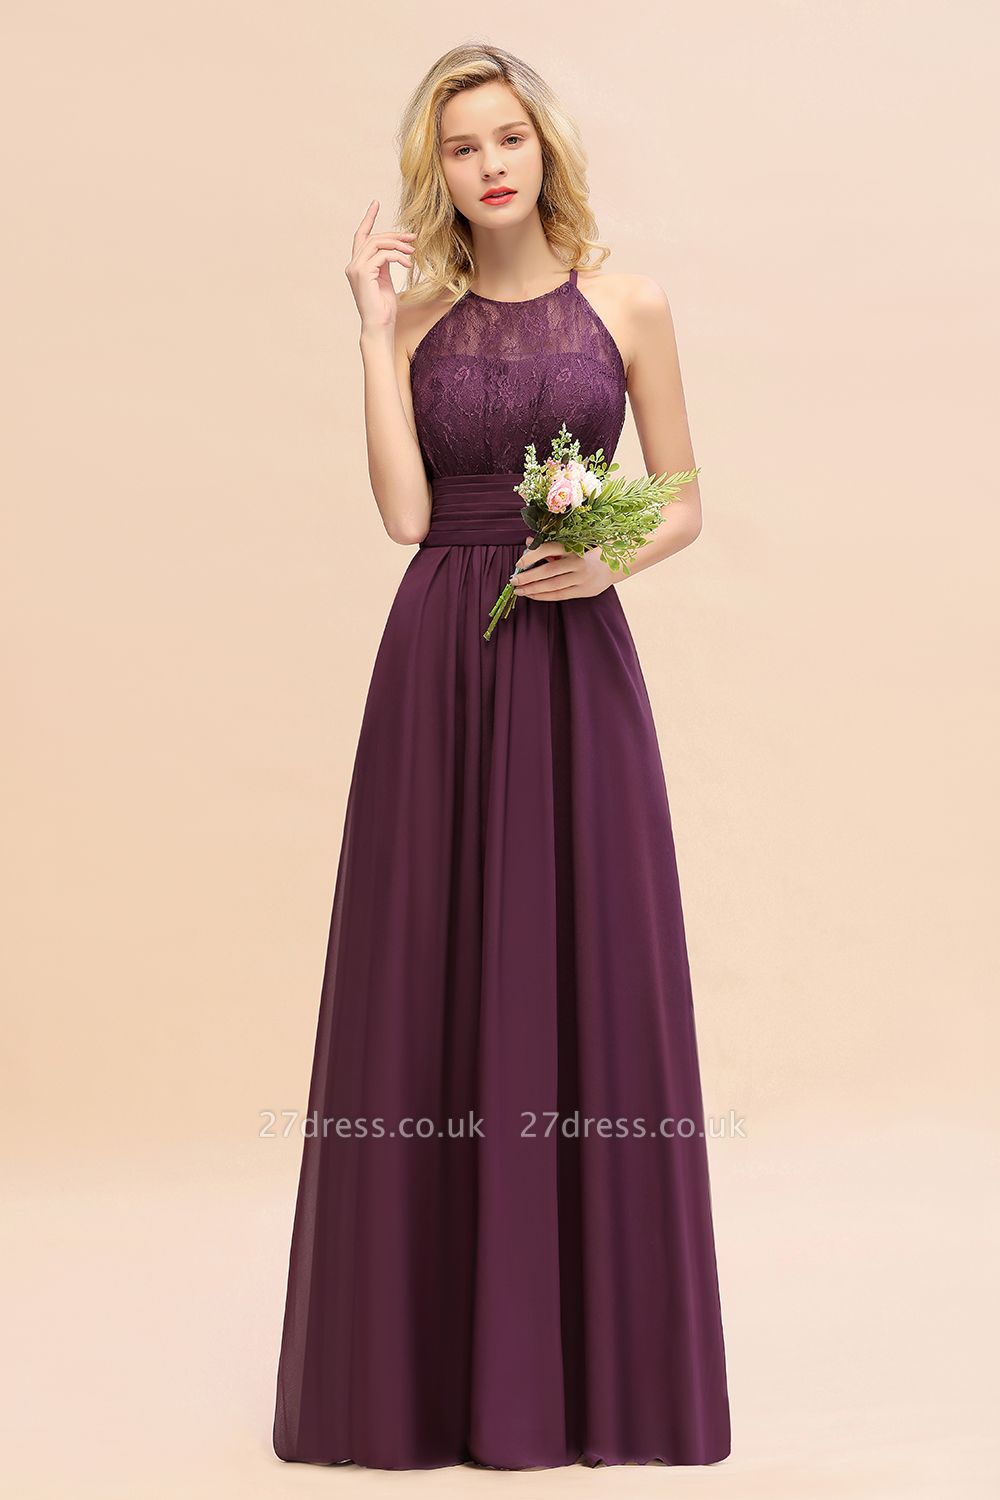 Halter Grape Lace Bridesmaid Dress Sleeveless Long Wedding Guest Dress